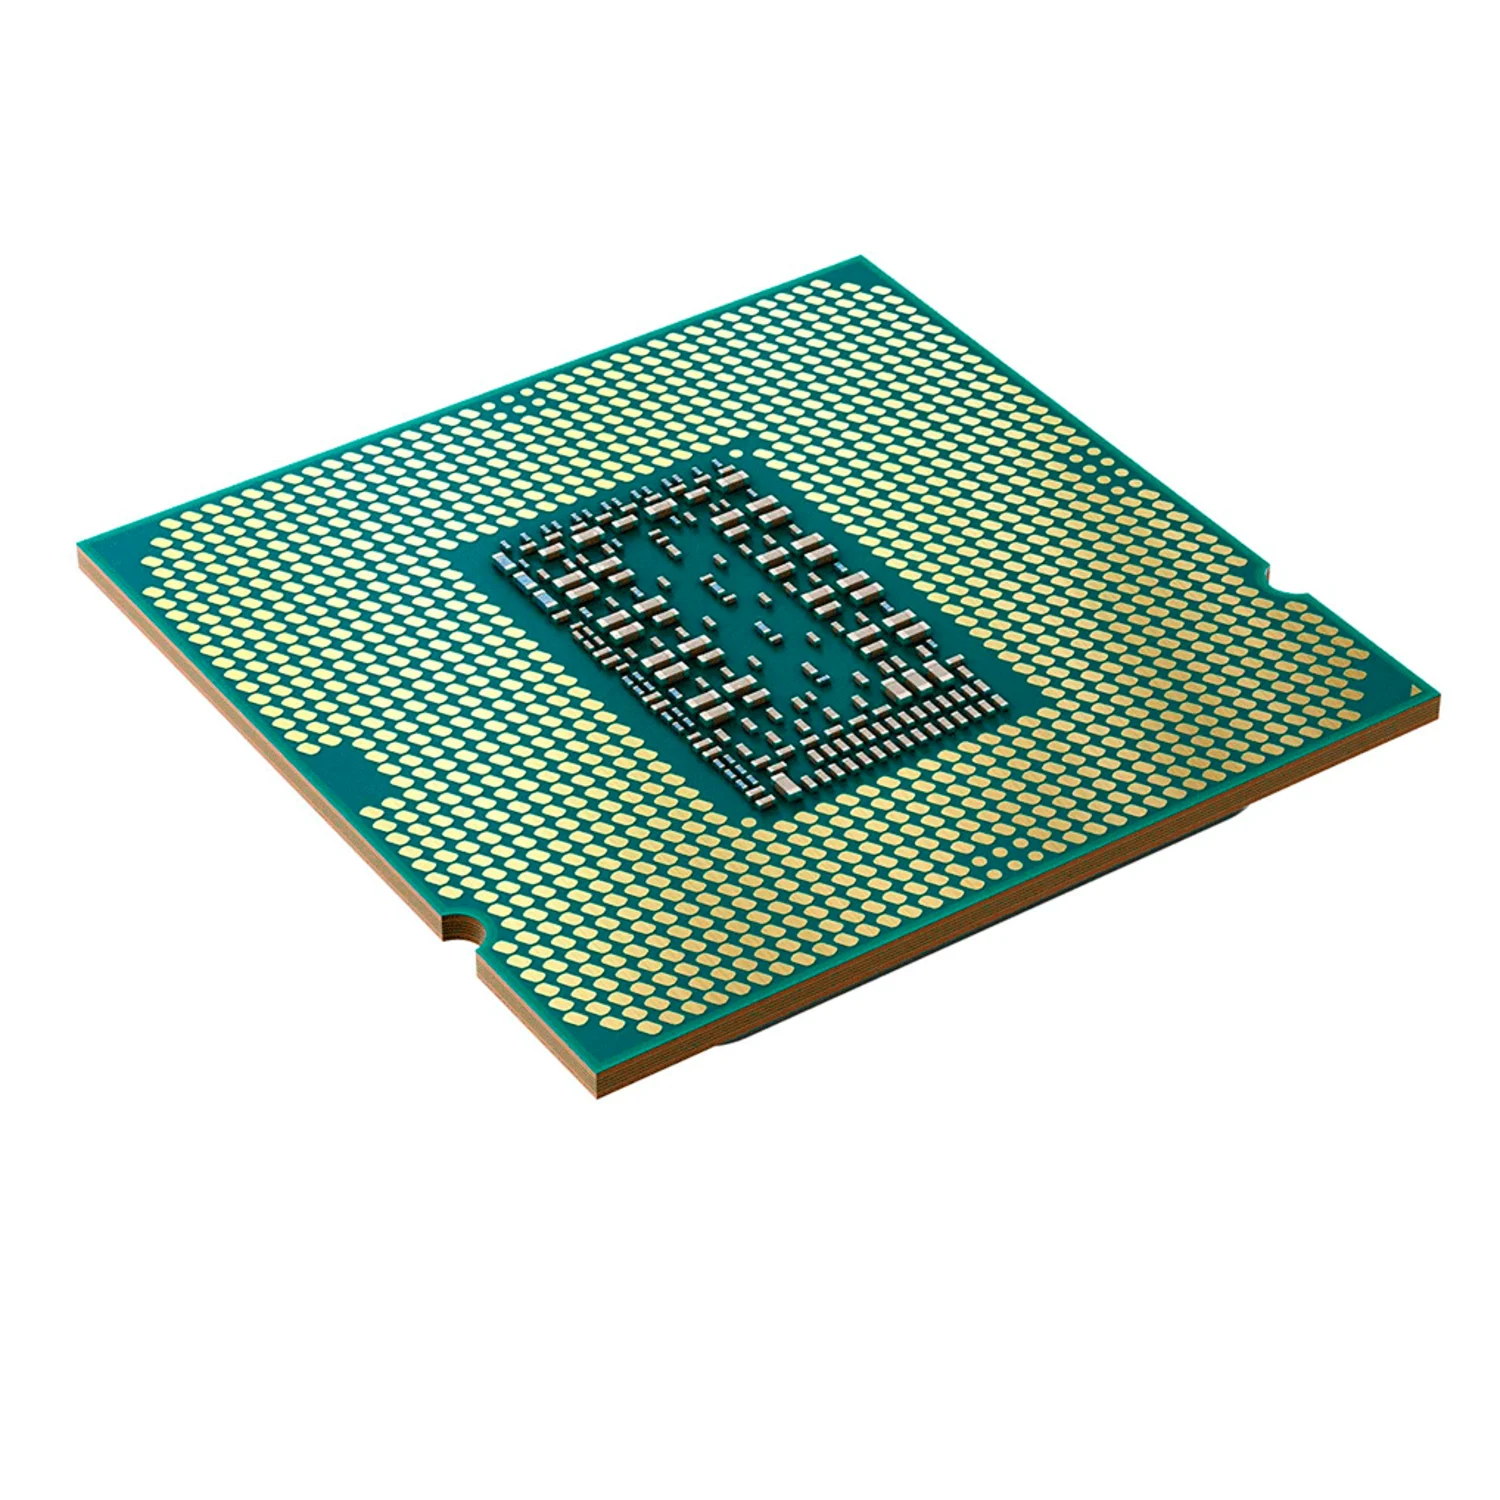 Processador Intel Core i5-11400F LGA Socket 1200 6 Core 12 Threads Cache 12MB
